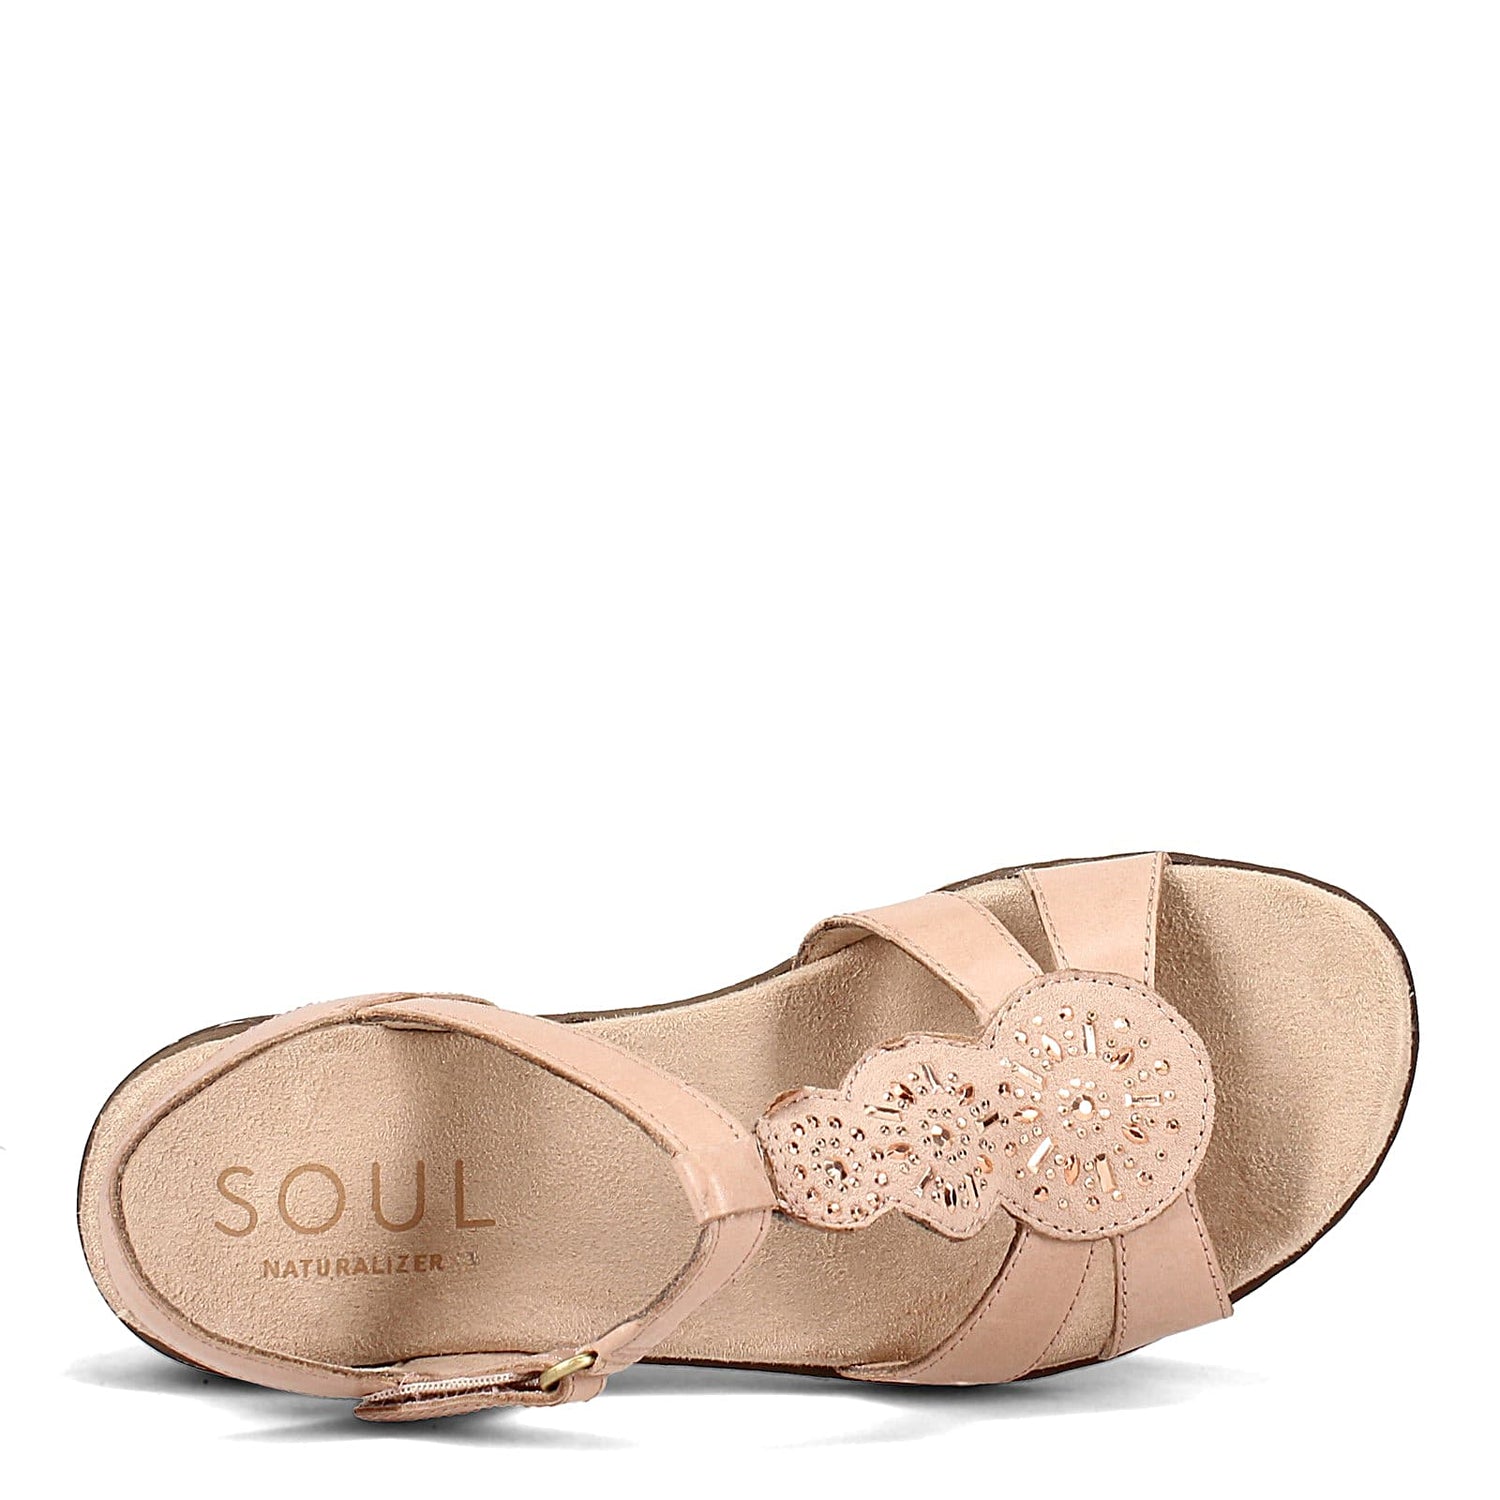 Peltz Shoes  Women's SOUL Naturalizer Belle Sandal